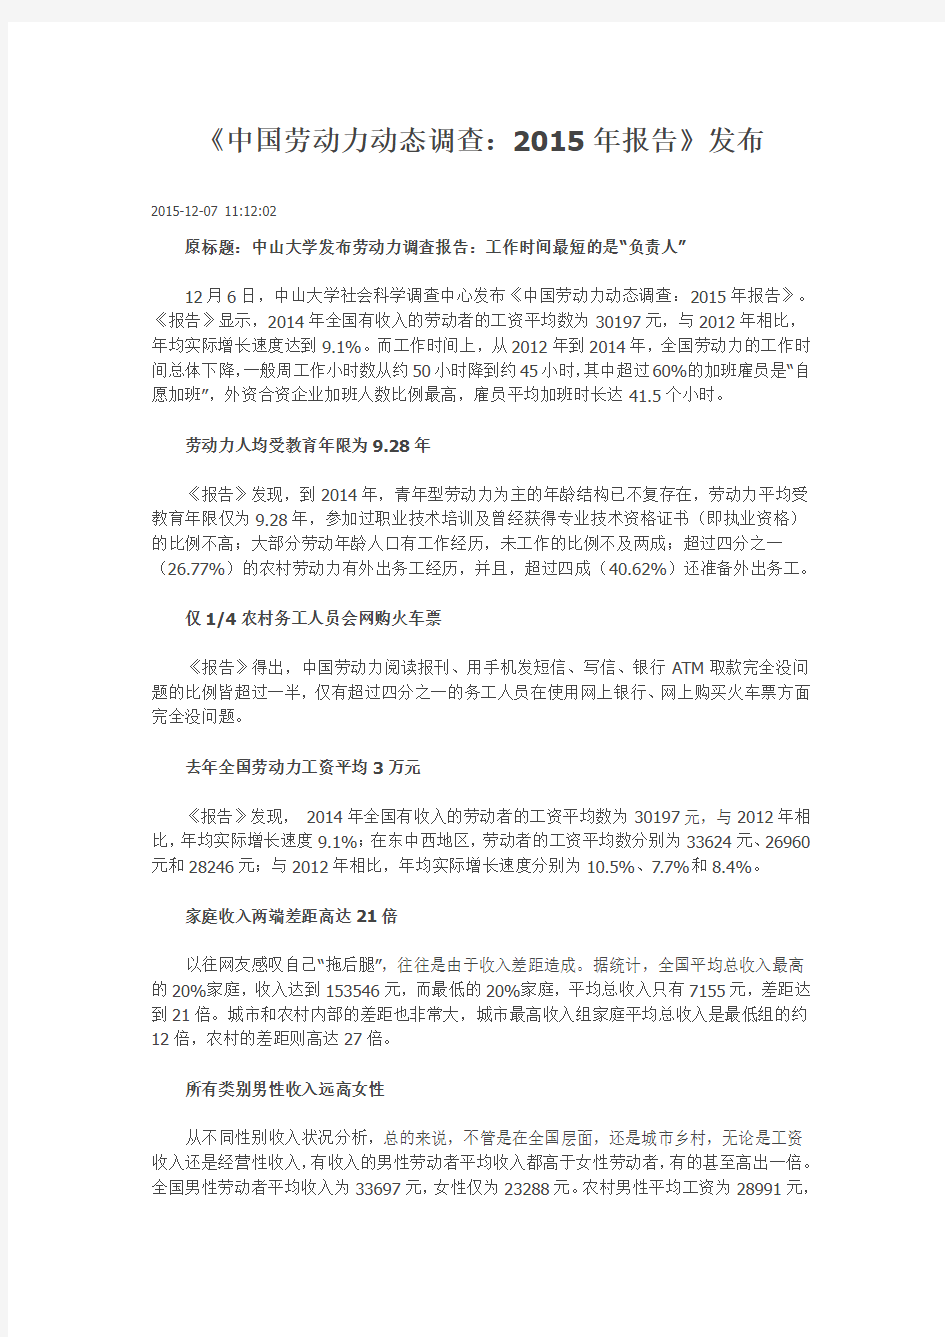 中国劳动力动态调查 2015年报告 发布